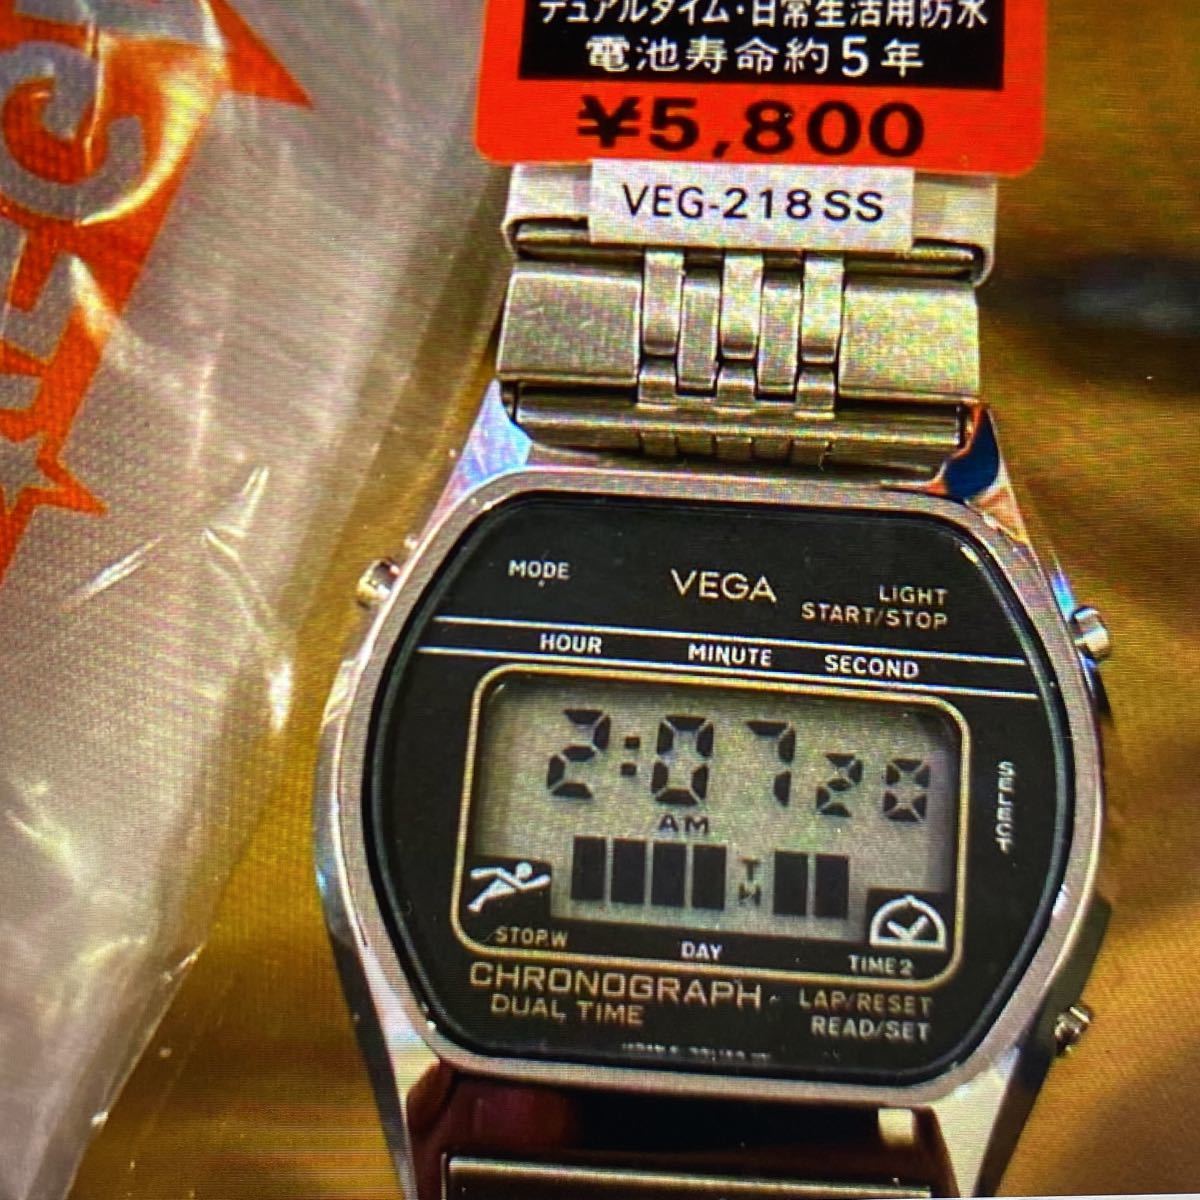 ベカデジタル腕時計メンズ ビンテージストック品-